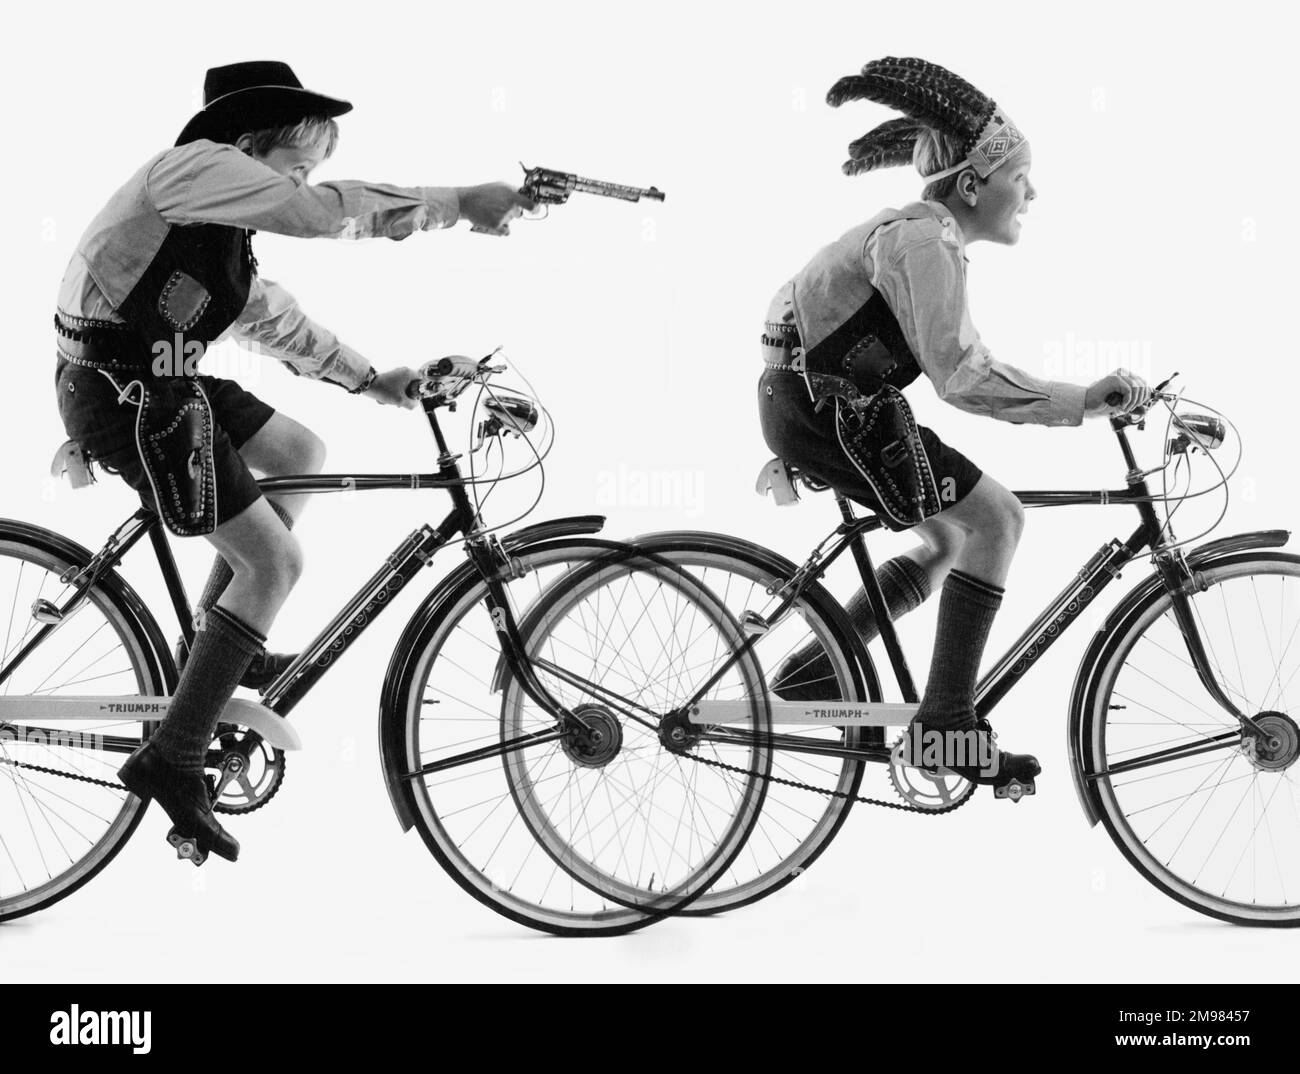 Werbung für Triumph-Fahrräder -- zwei junge Models, die Cowboys und Indianer spielen. Stockfoto